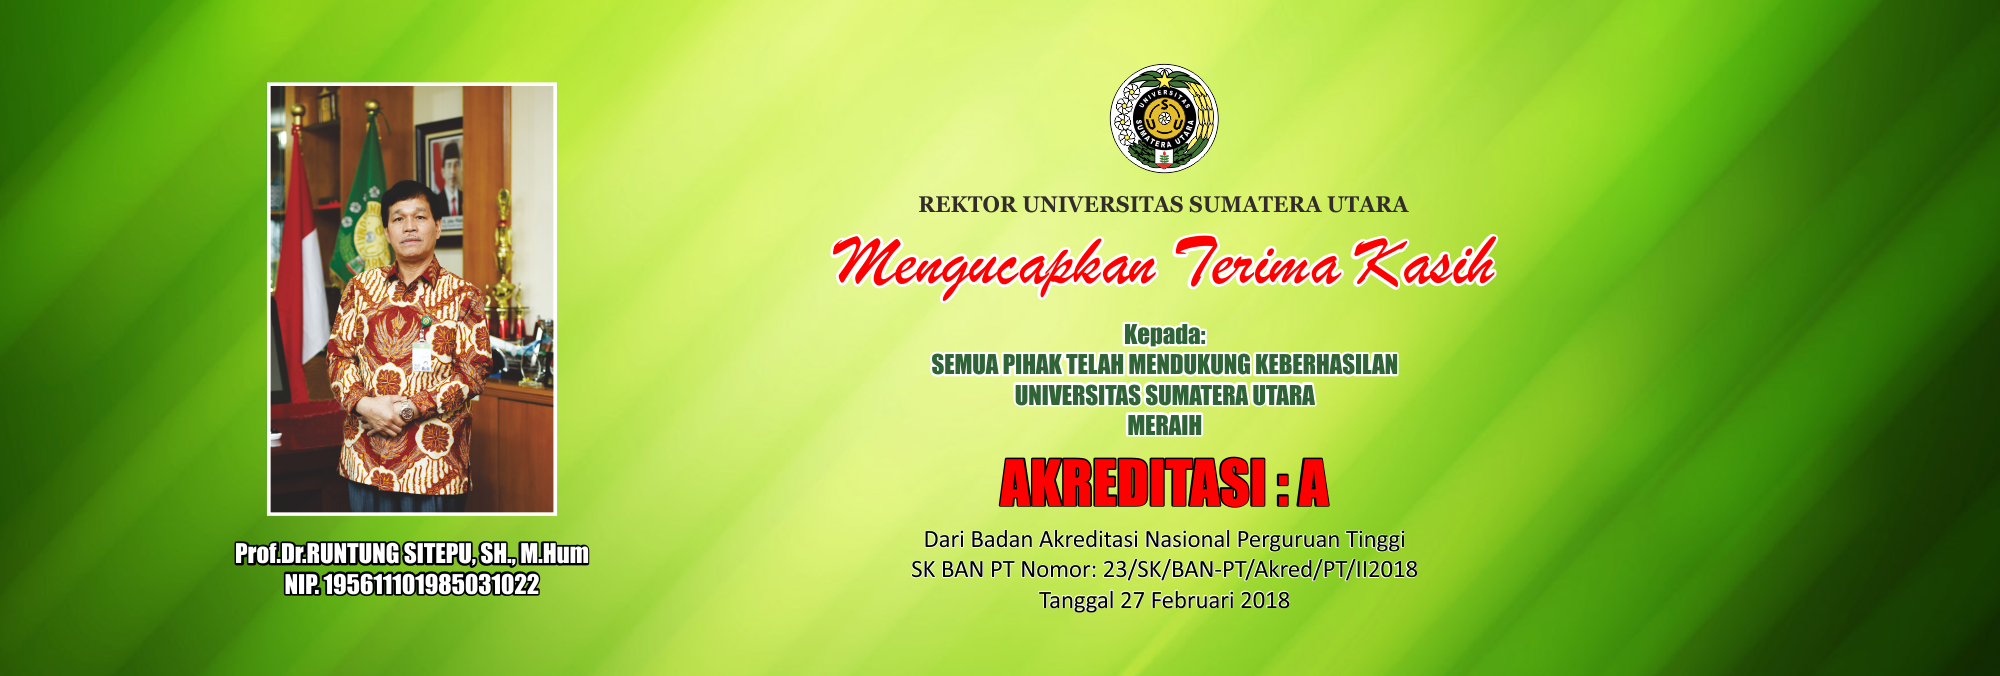 Ucapan Terima Kasih Rektor Atas Akreditasi Universitas Sumatera Utara